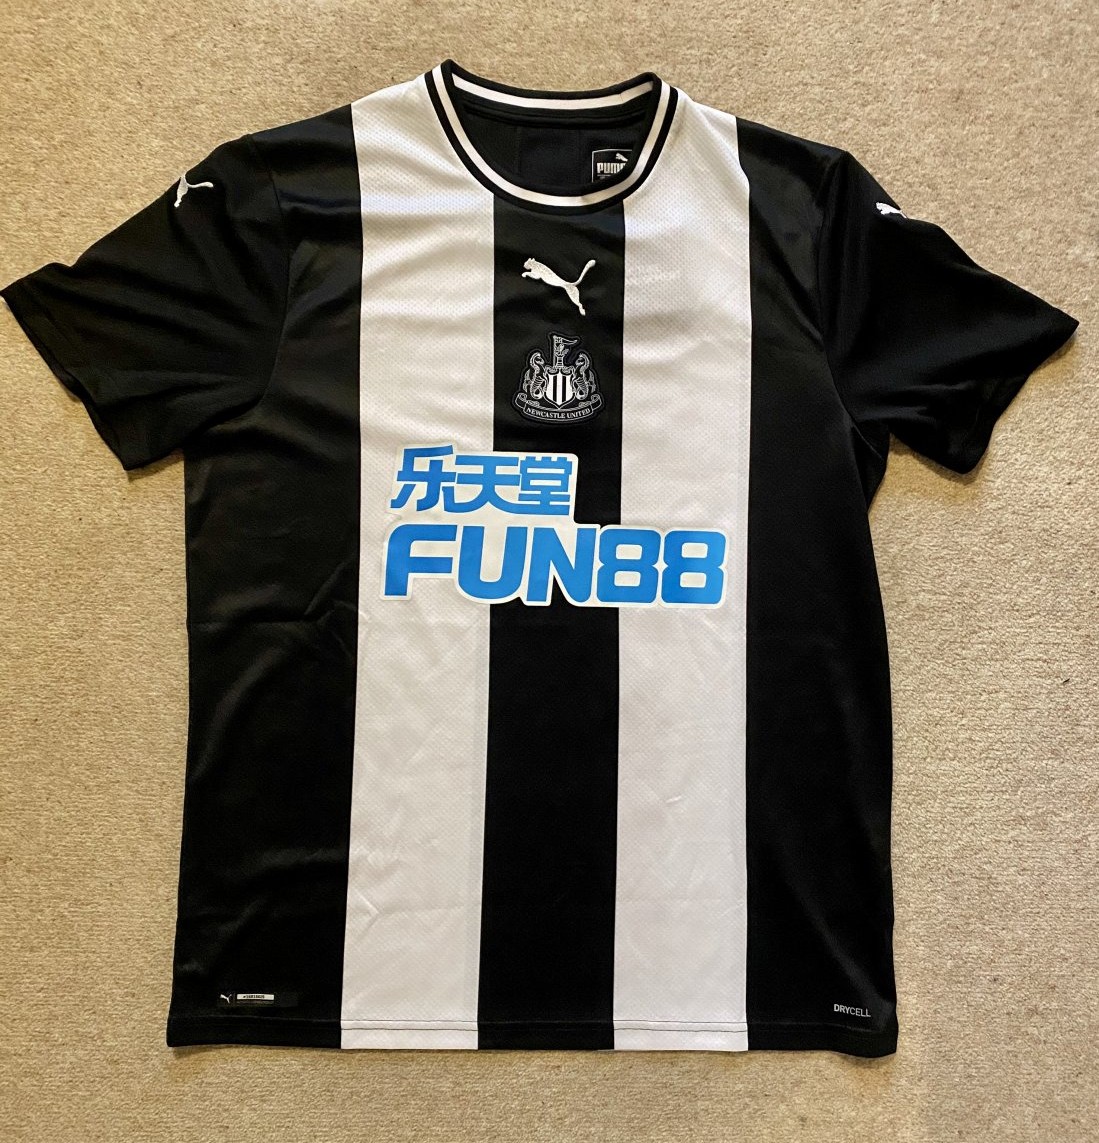 Newcastle Home de Fútbol 2019 - 2020. FUN88